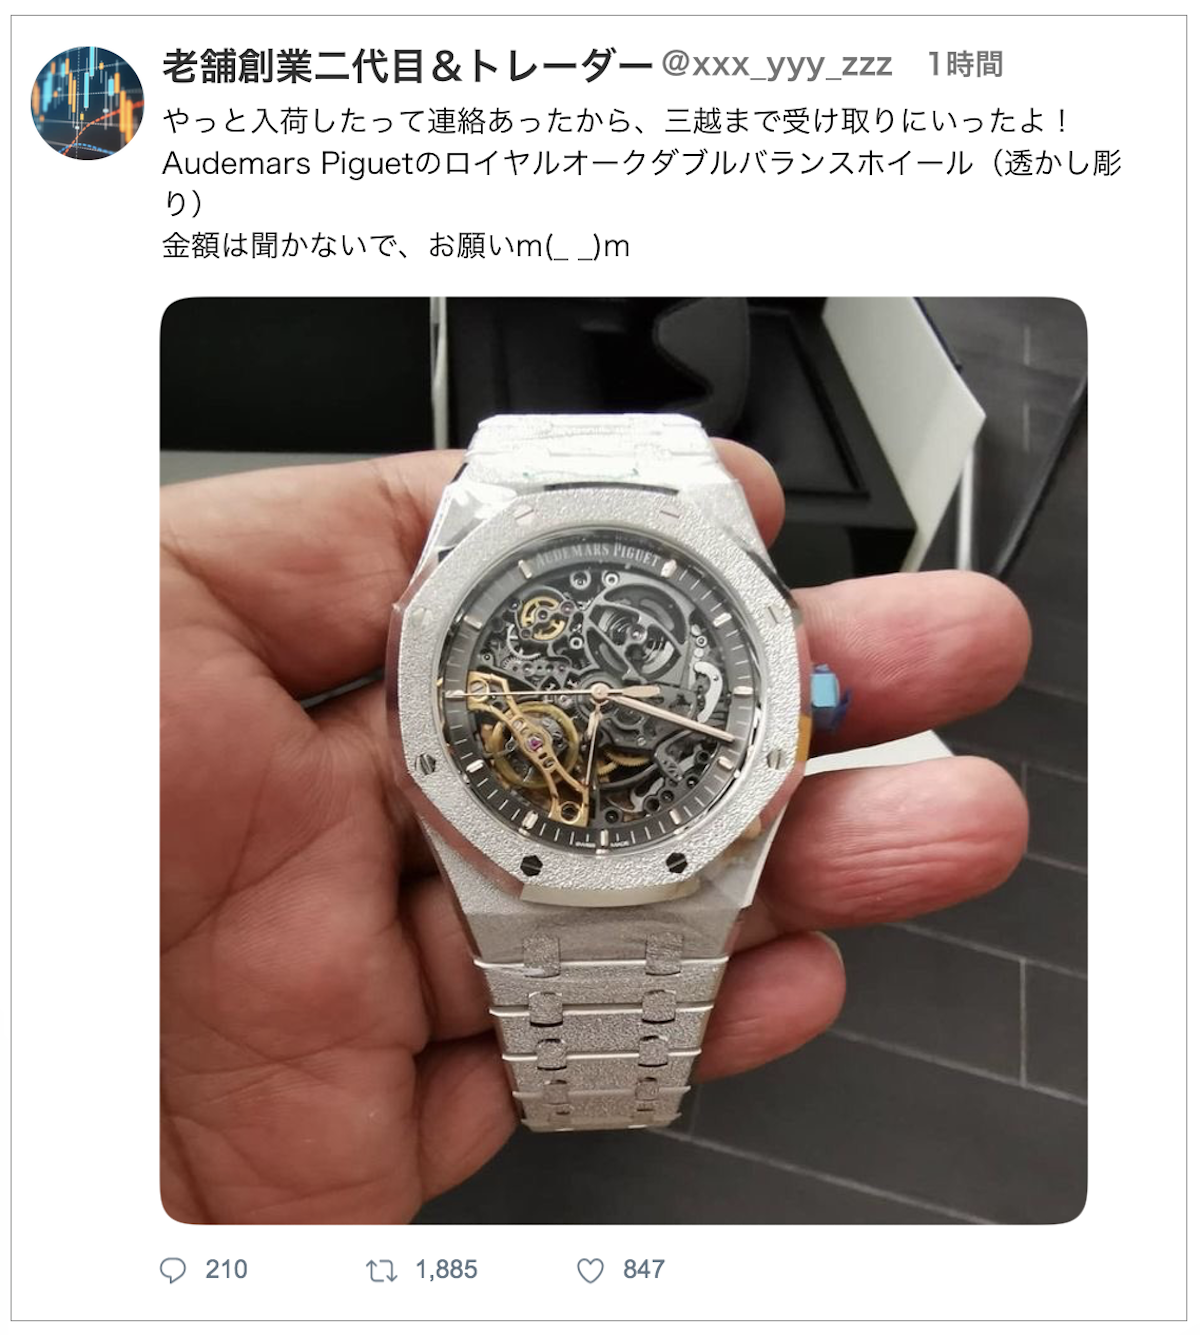 高級腕時計を買った「偽ツイート」